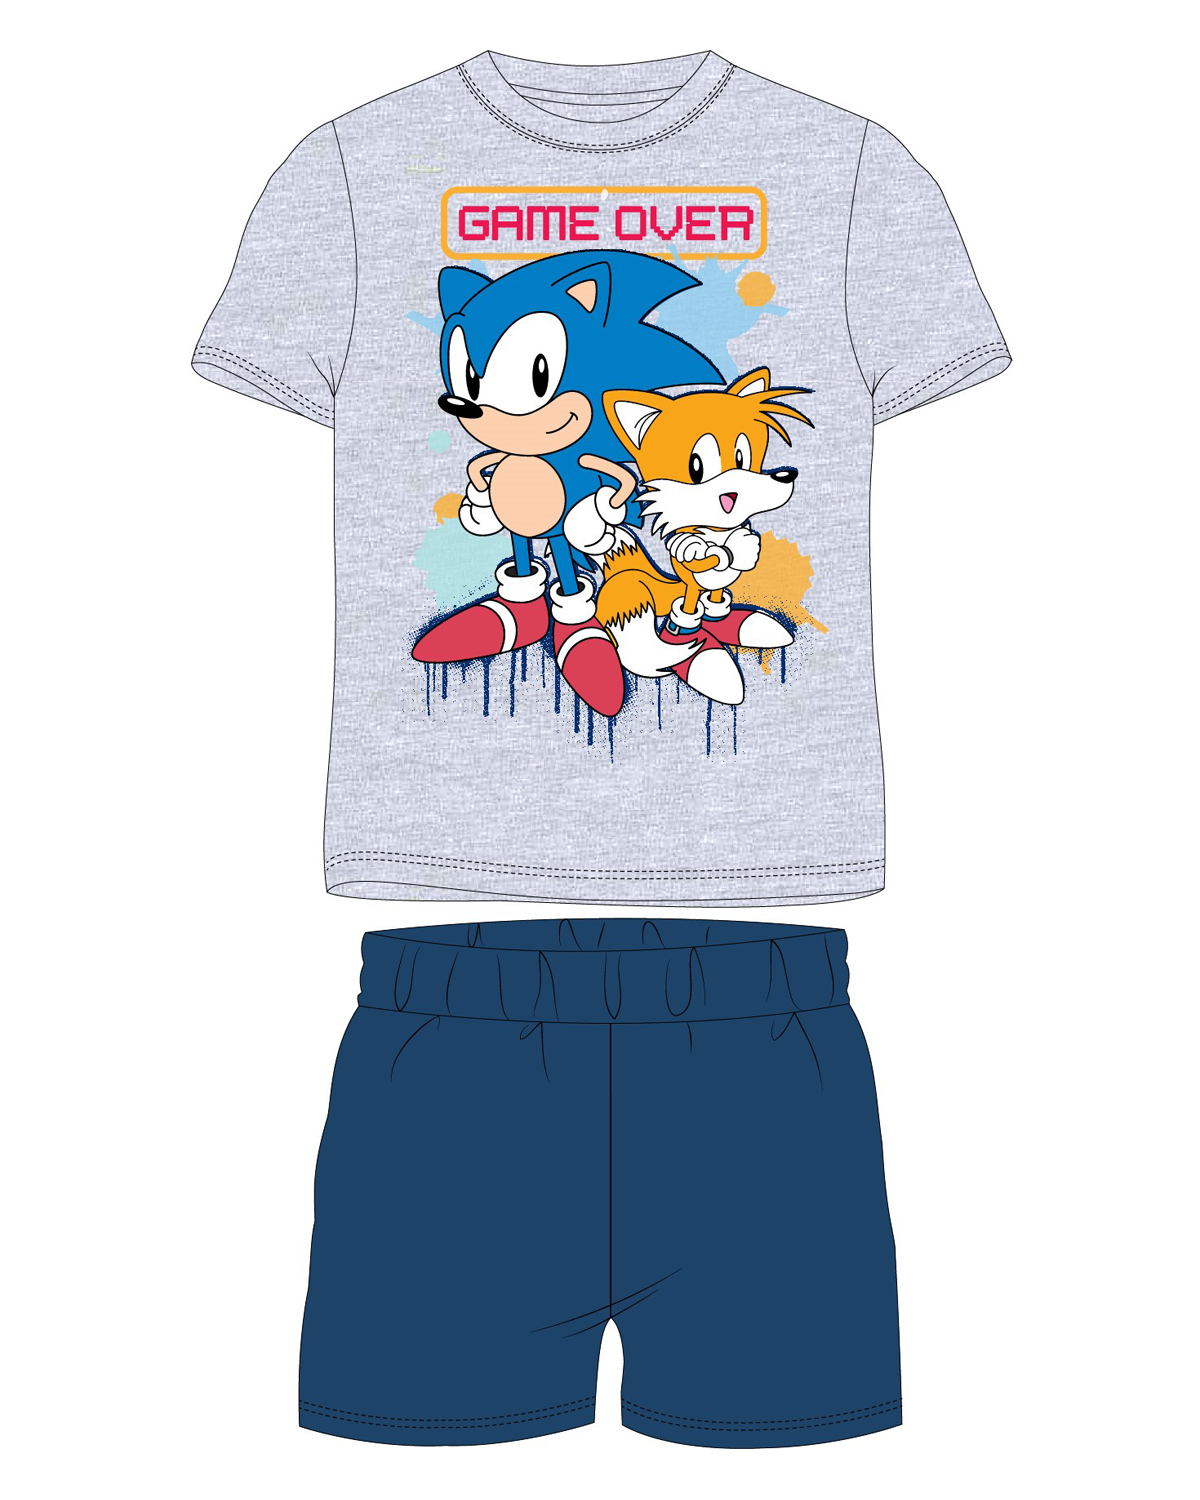 Ježek SONIC - licence Chlapecké pyžamo - Ježek Sonic 5204011, šedý melír / tmavě modrá Barva: Šedá, Velikost: 116